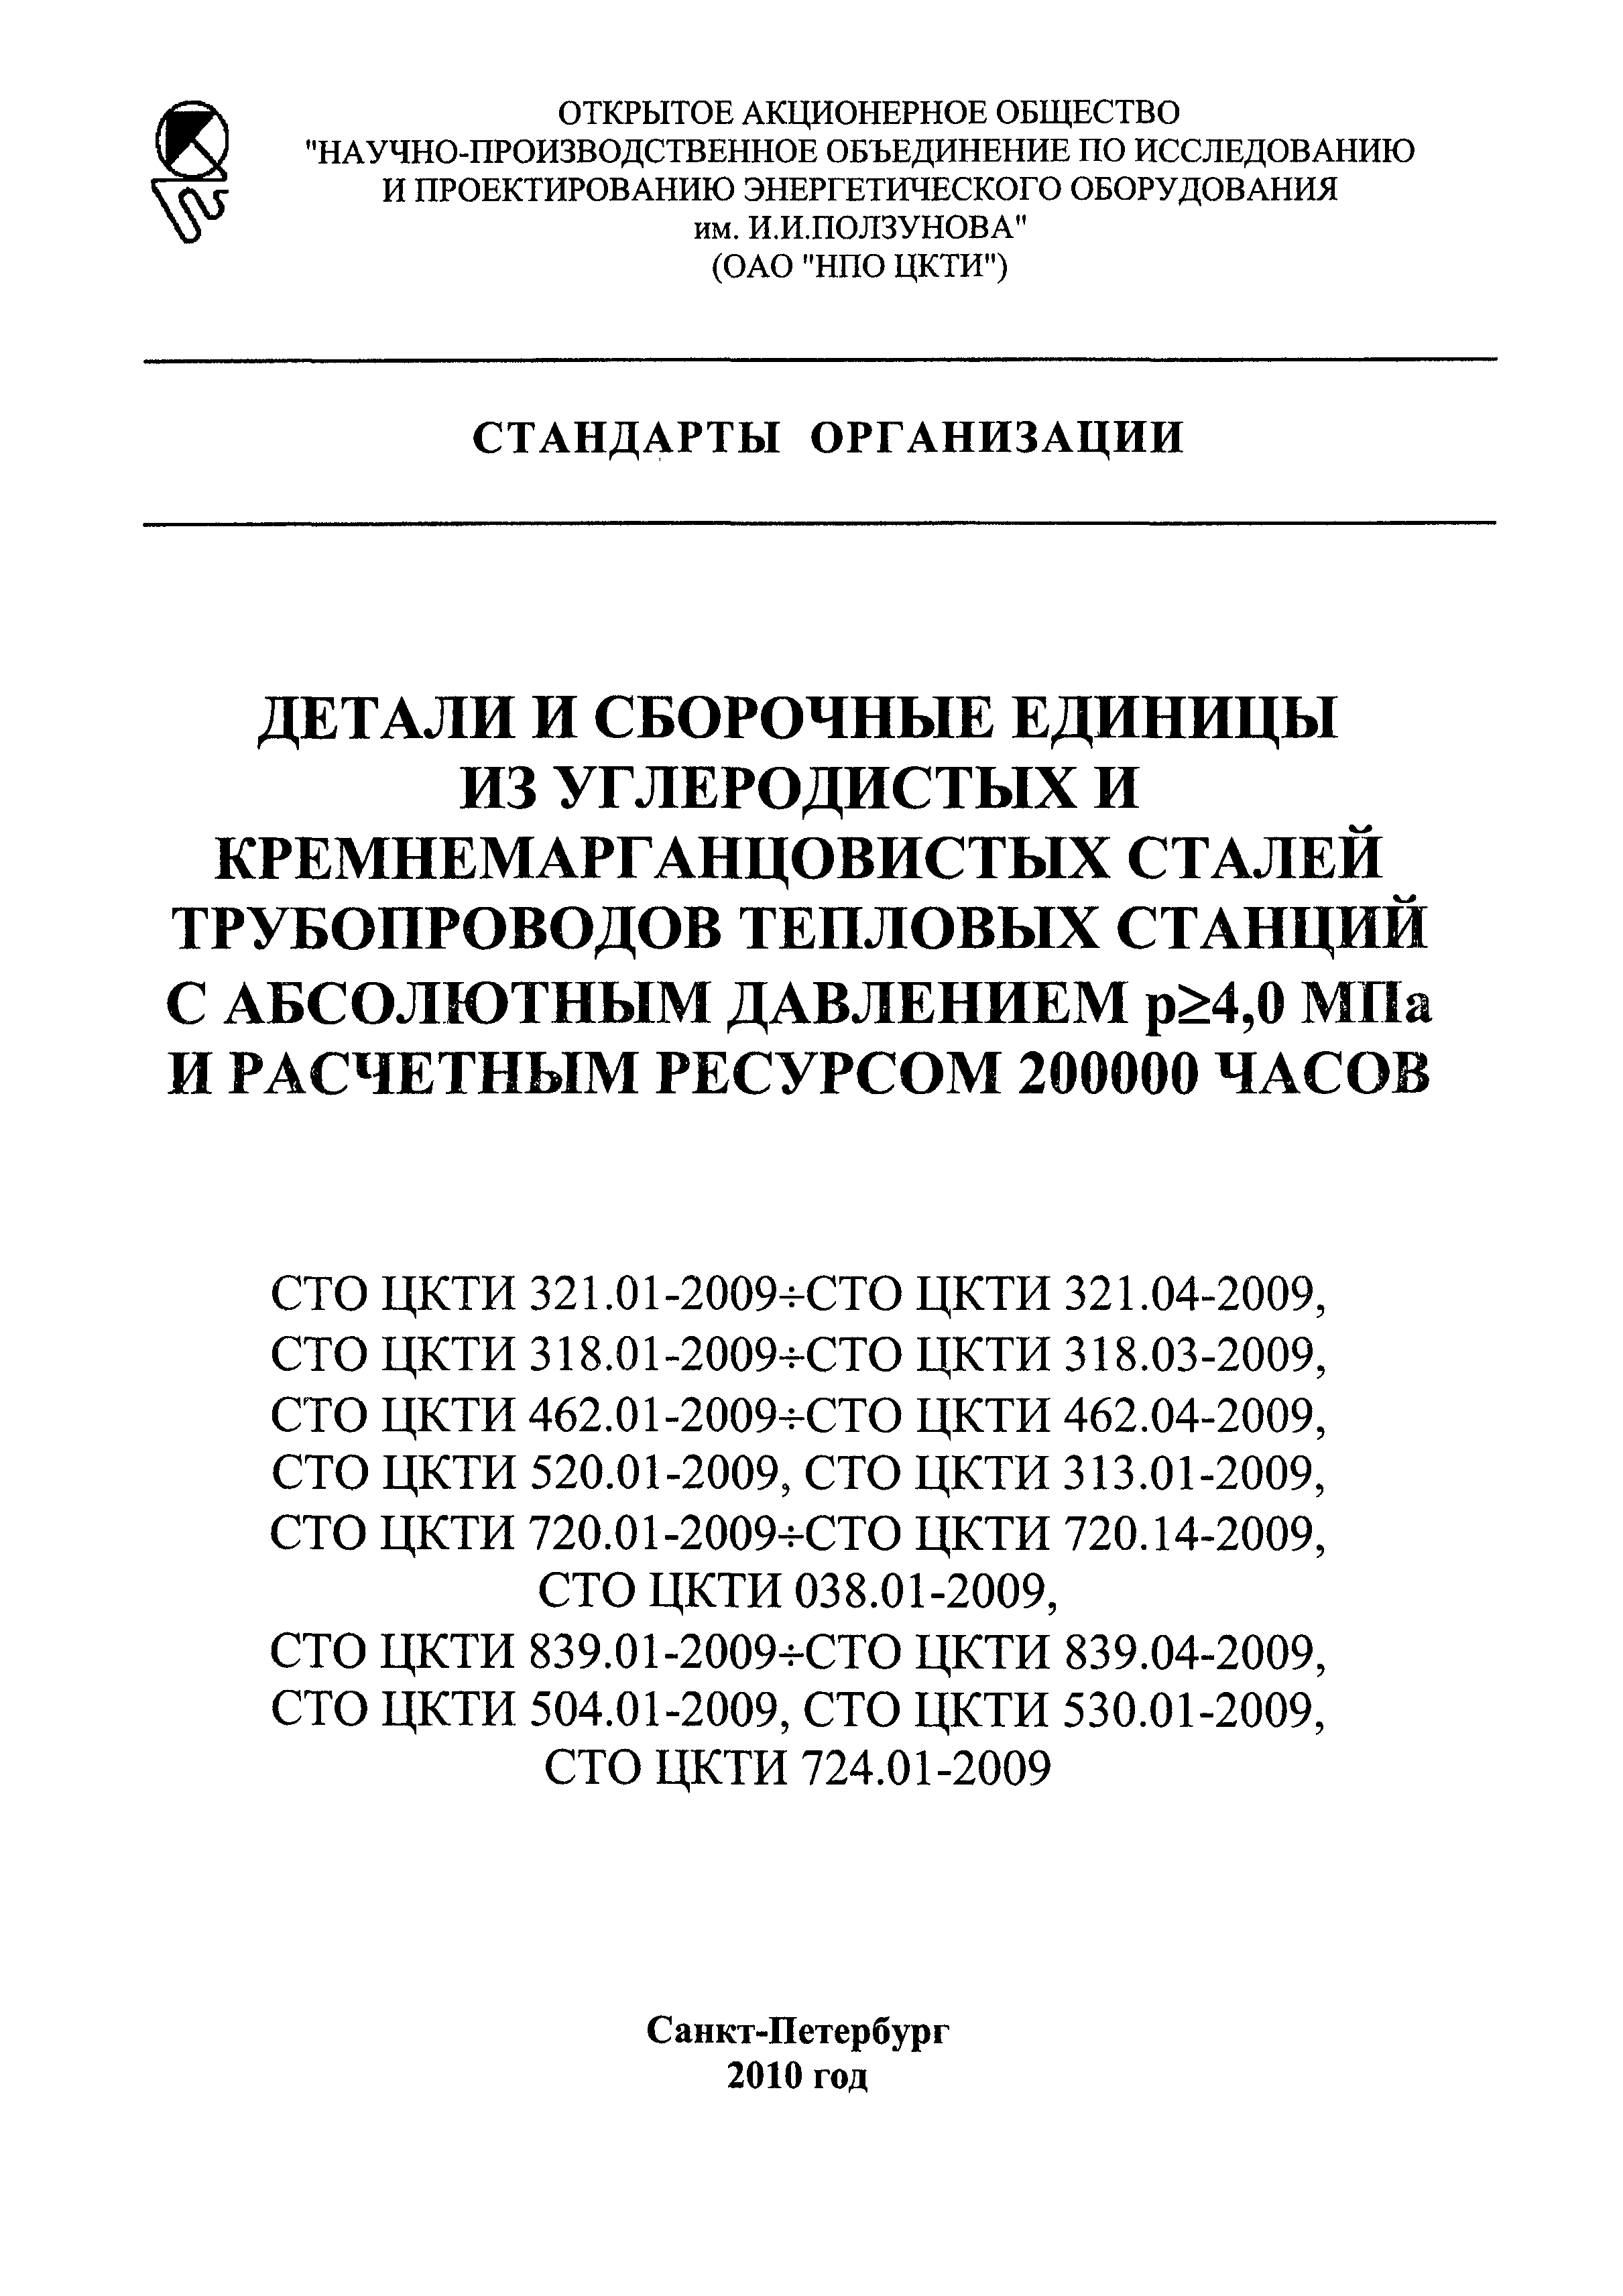 СТО ЦКТИ 462.01-2009